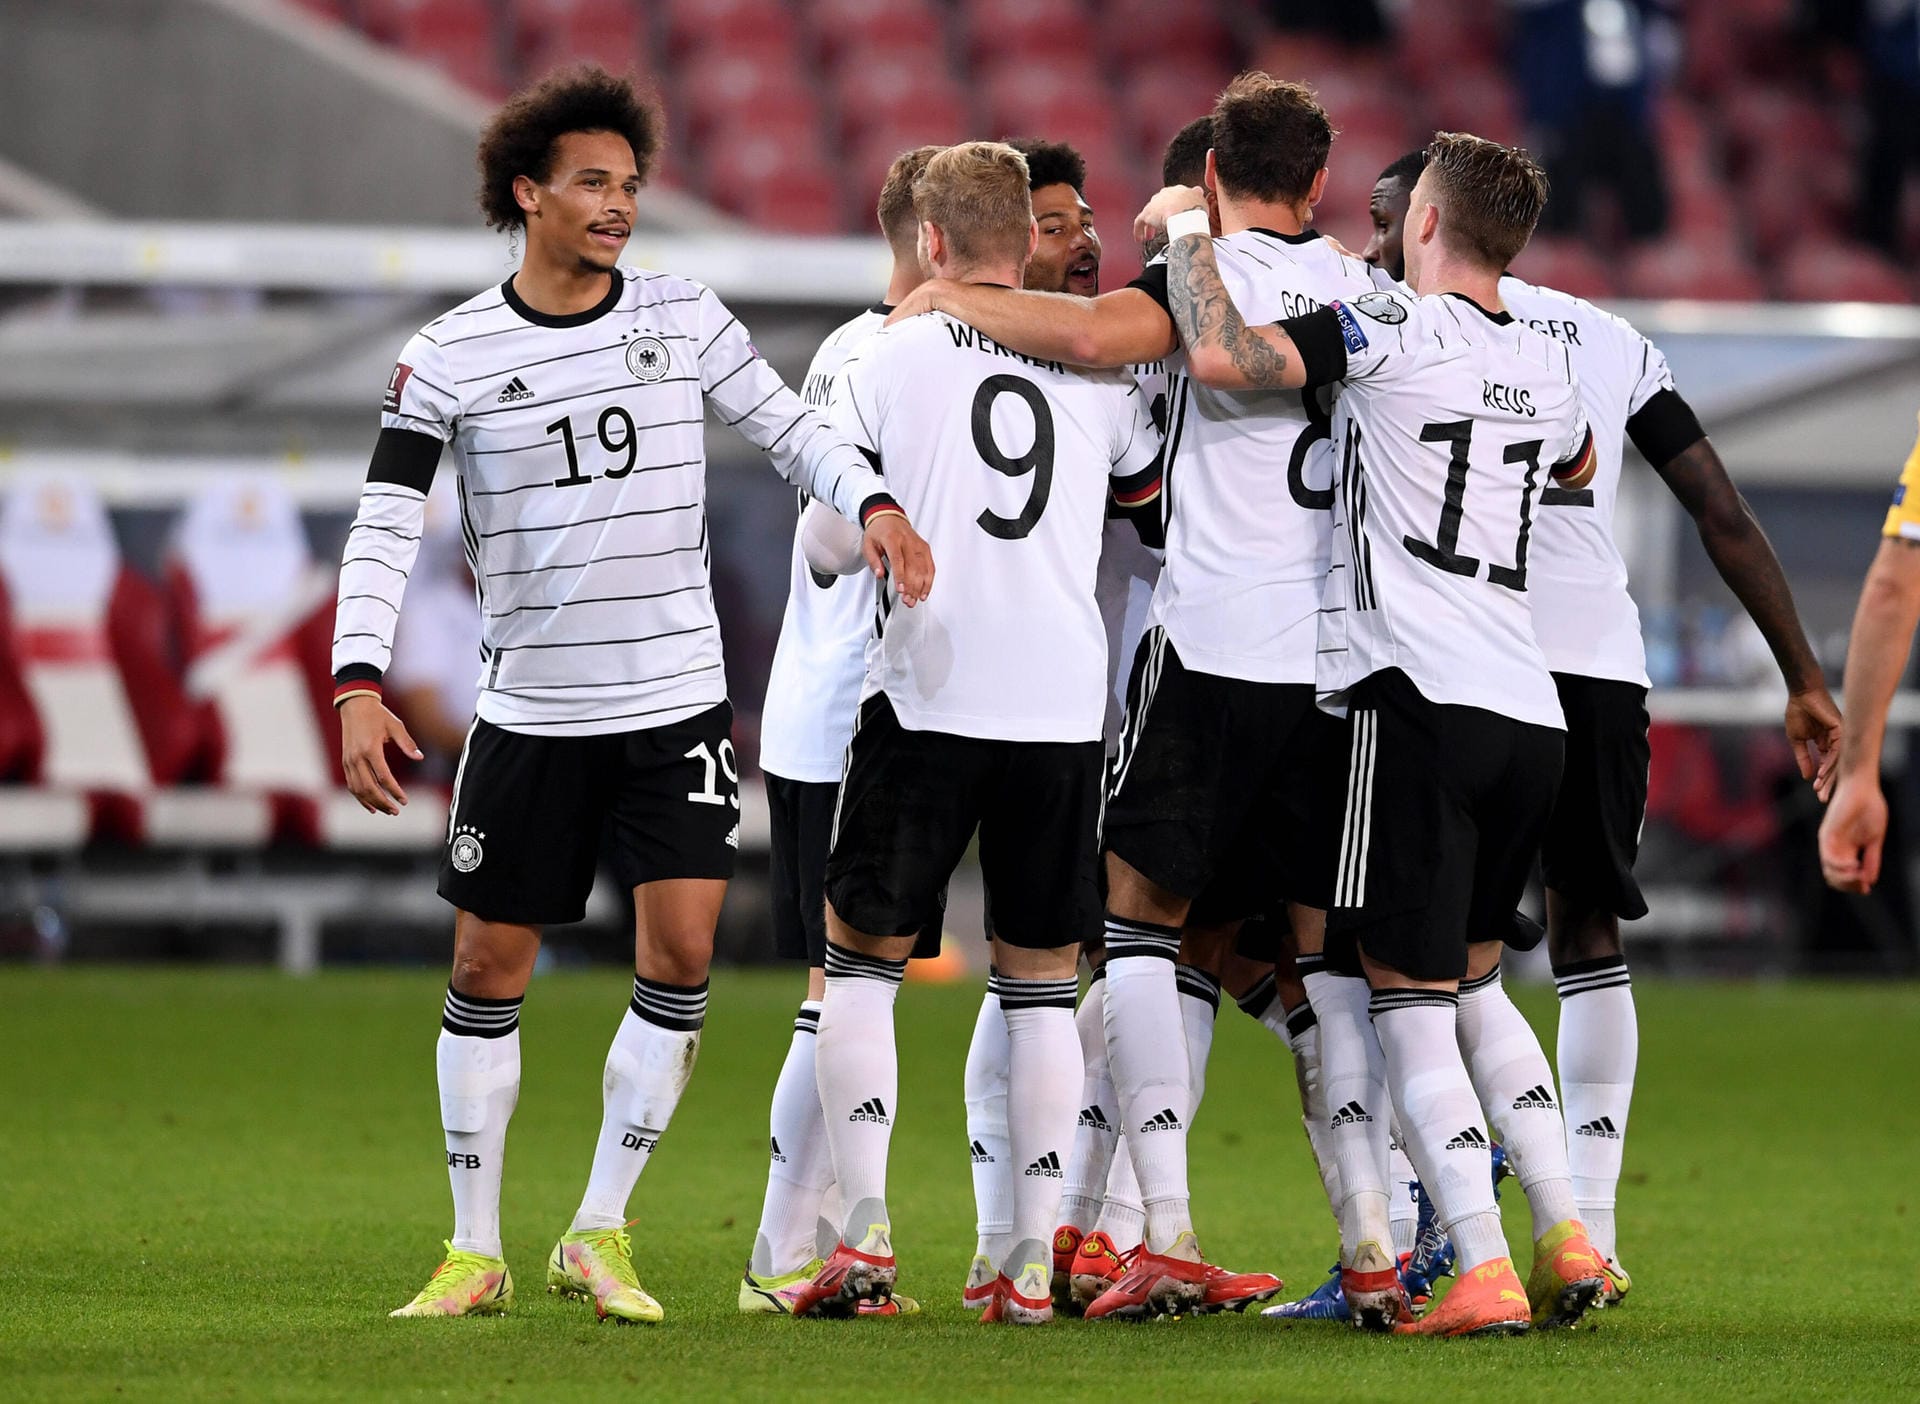 In der WM-Qualifikation gegen Armenien überzeugte das DFB-Team über die volle Distanz. Dabei konnten sich besonders drei deutsche Spieler auszeichnen. Die Einzelkritik.